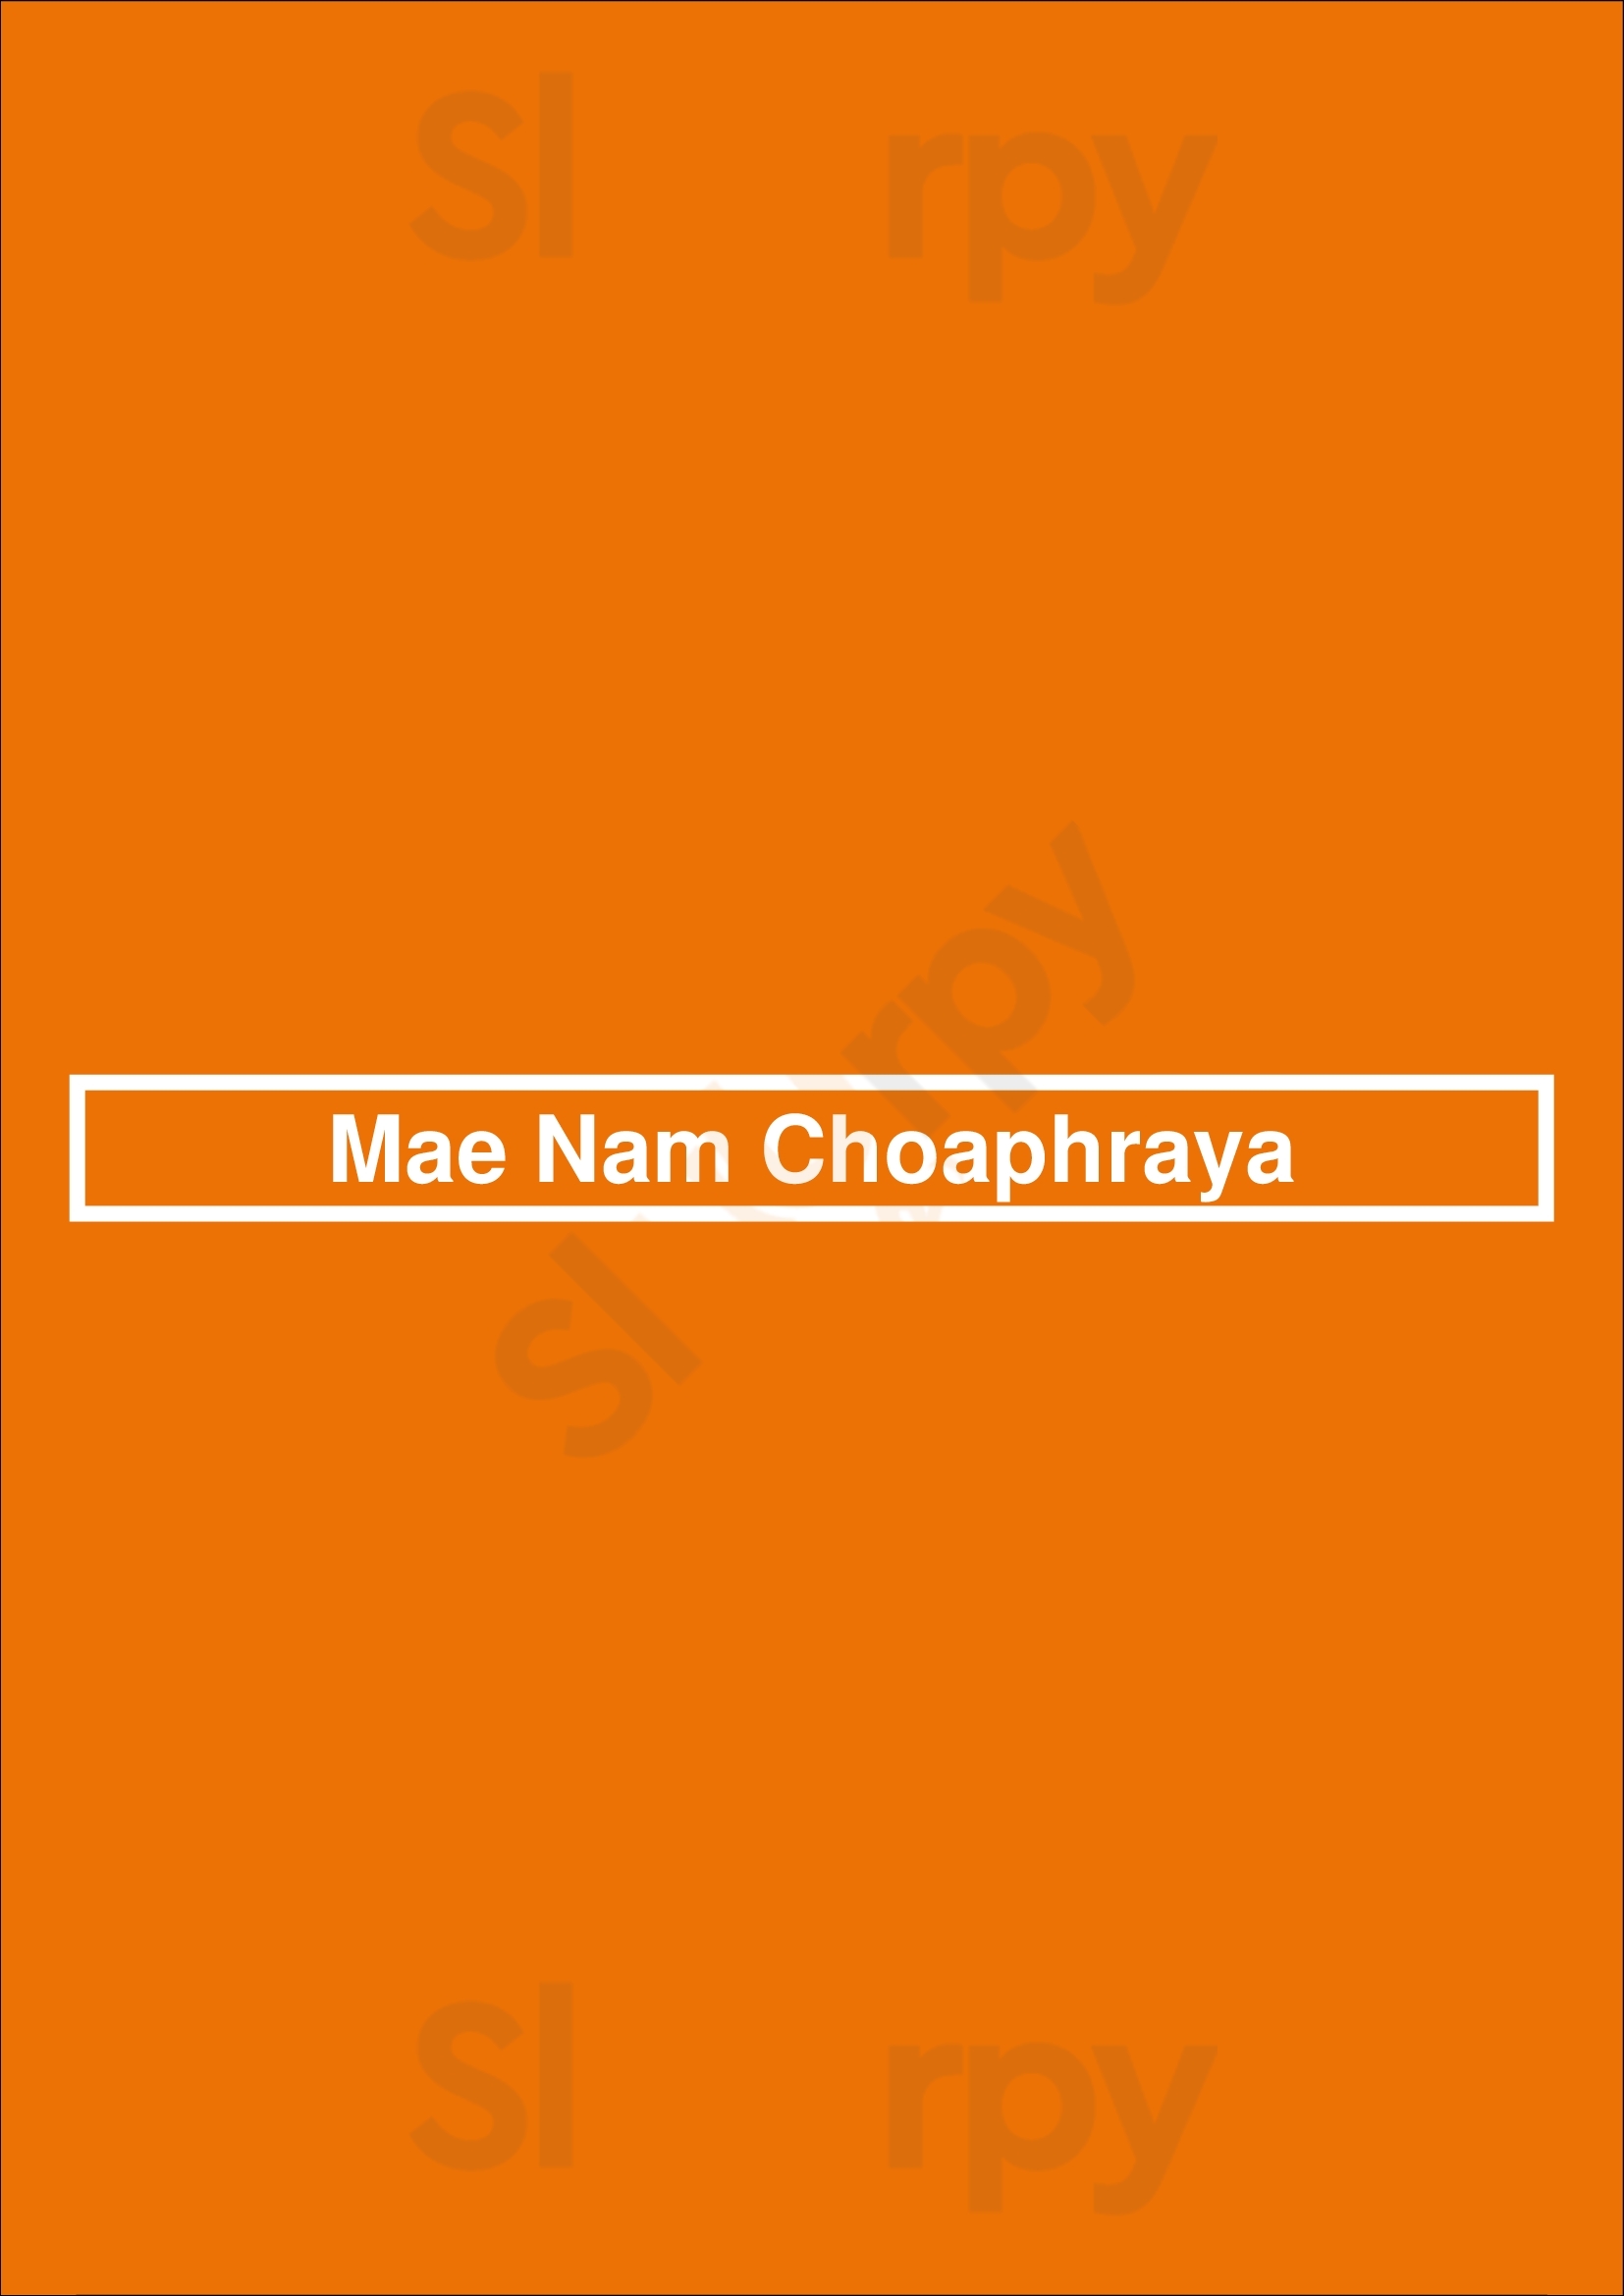 Mae Nam Choaphraya Paris Menu - 1